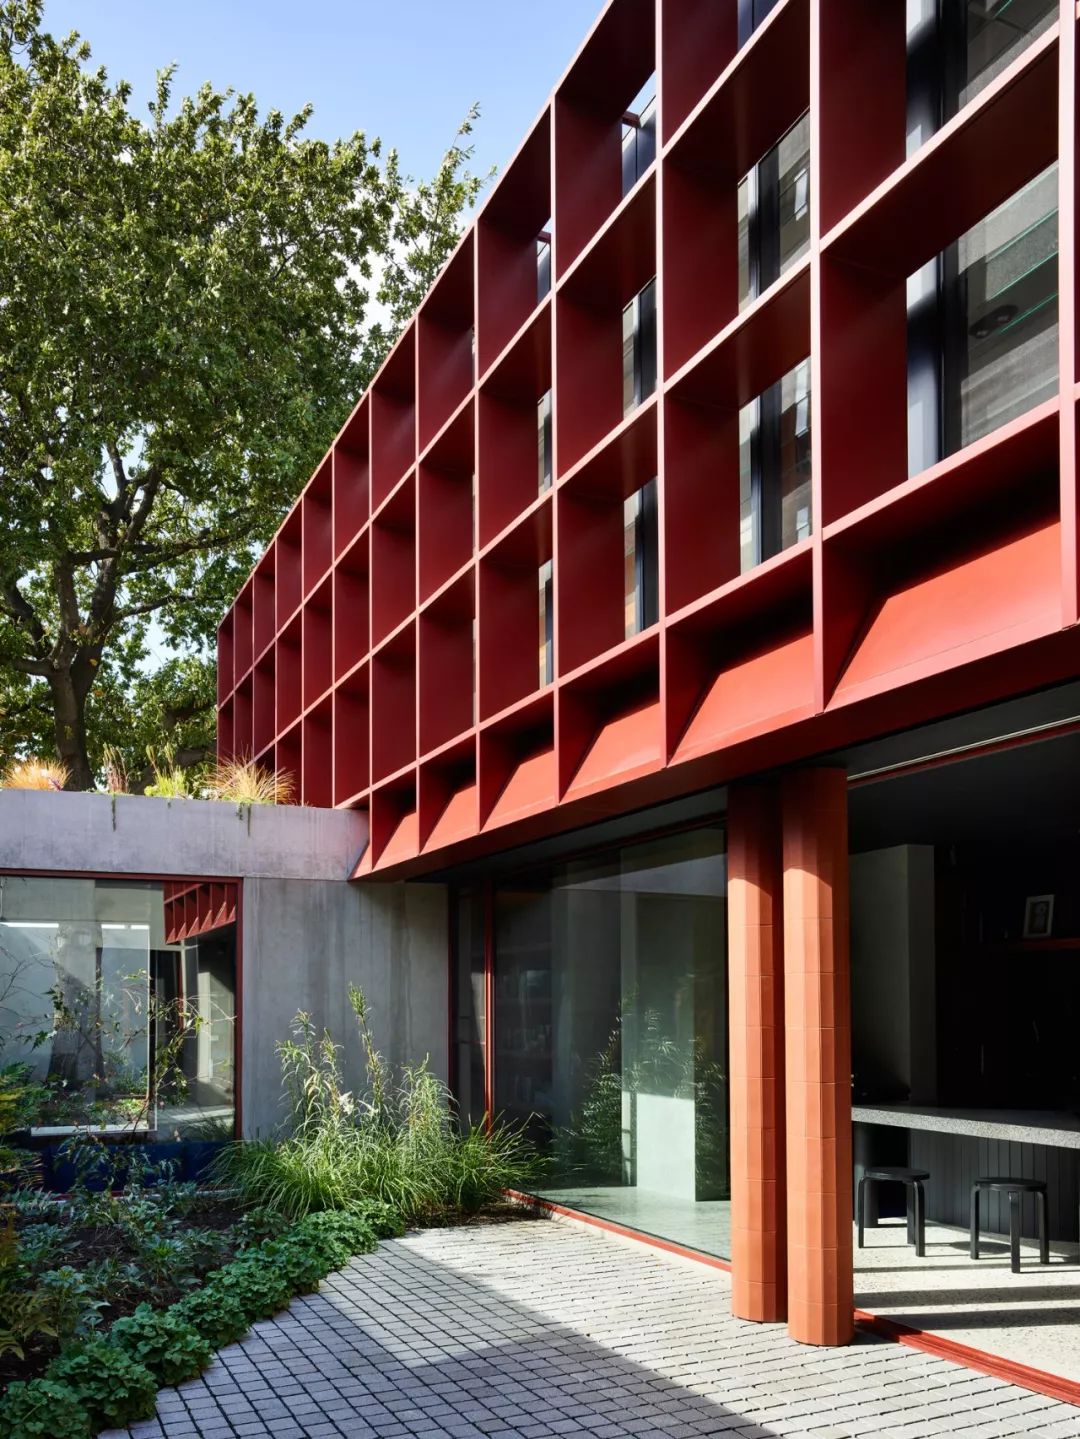 开放式的房屋外立面有着特殊的形式,红色的钢铁立面有着许多功能,包括